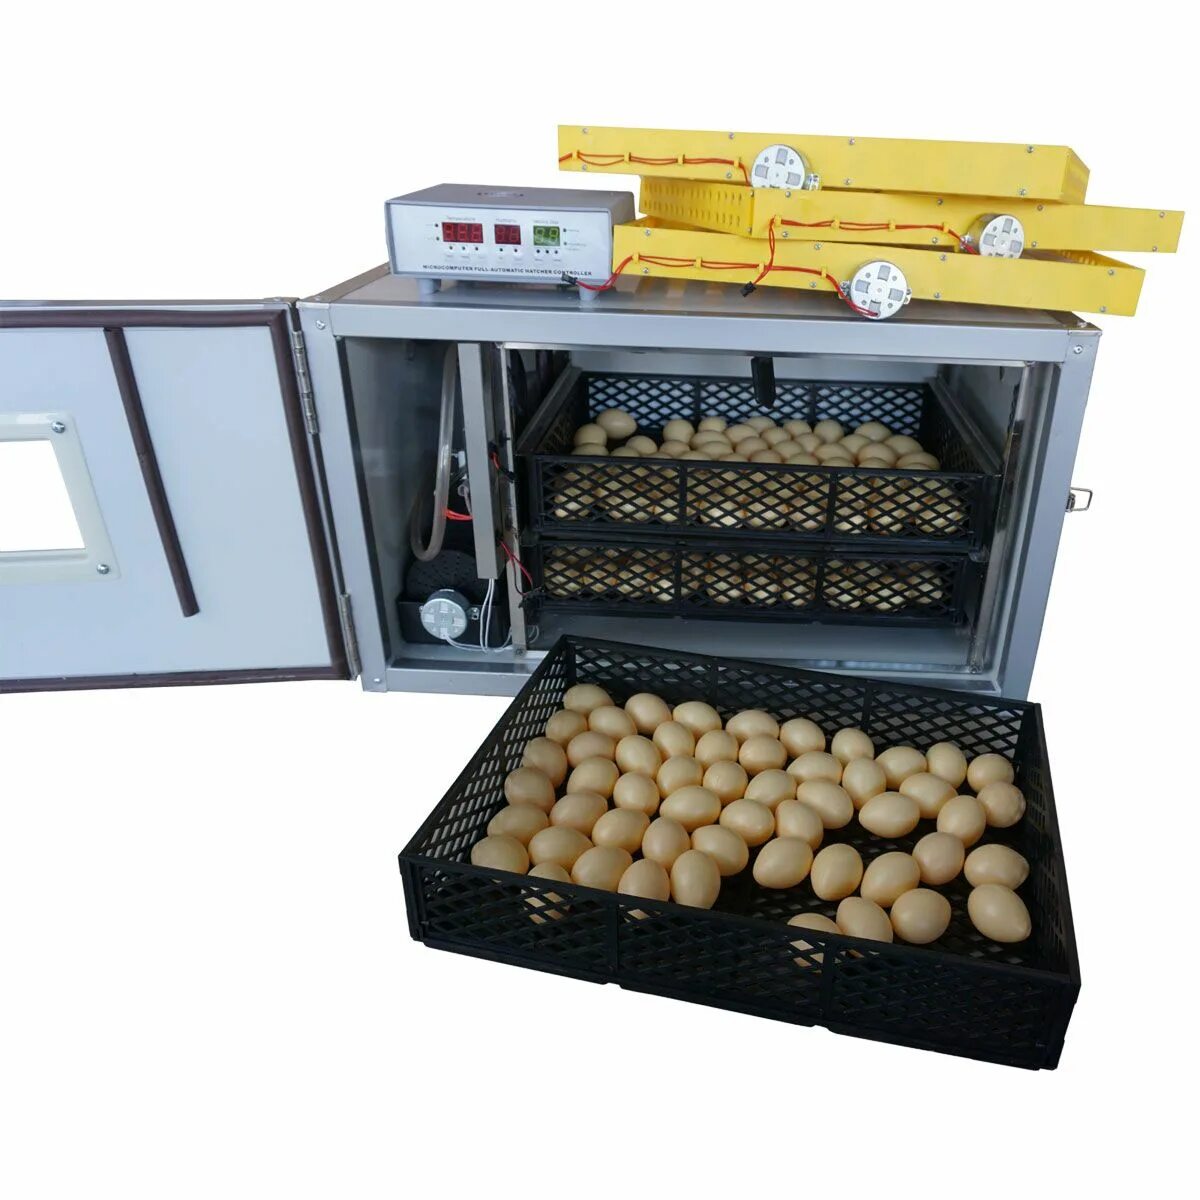 Лучшие инкубаторы для яиц для дома. Инкубатор для яиц FHQ-MN-24/56 Intelligent incubator Controller. Инкубатор FHQ-MN-24/56. Инкубатор для яиц FHQ-MN-24/56. Автоматический инкубатор FHQ-24/26.